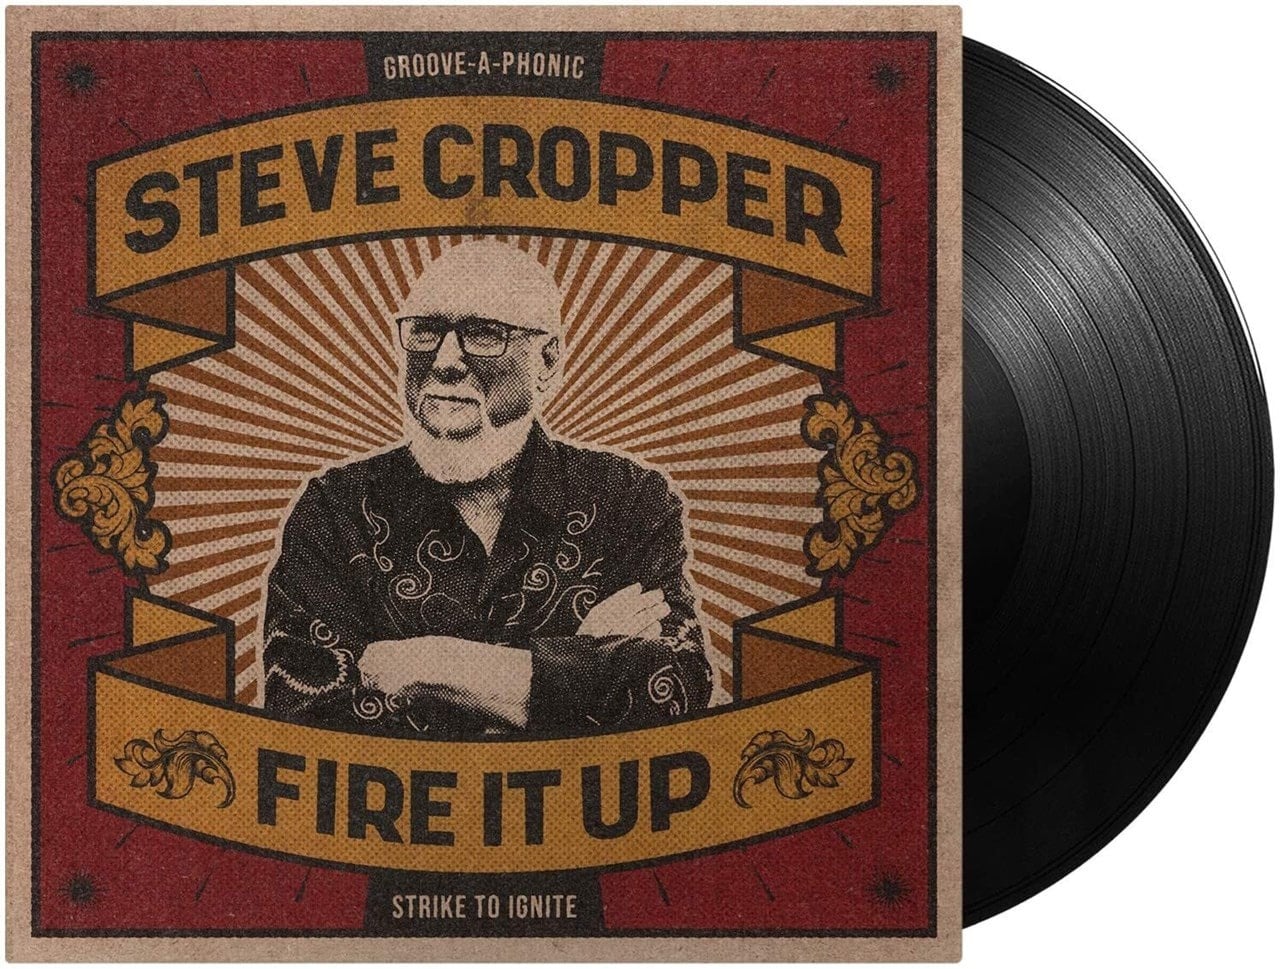 STEVE CROPPER - FIRE IT UP